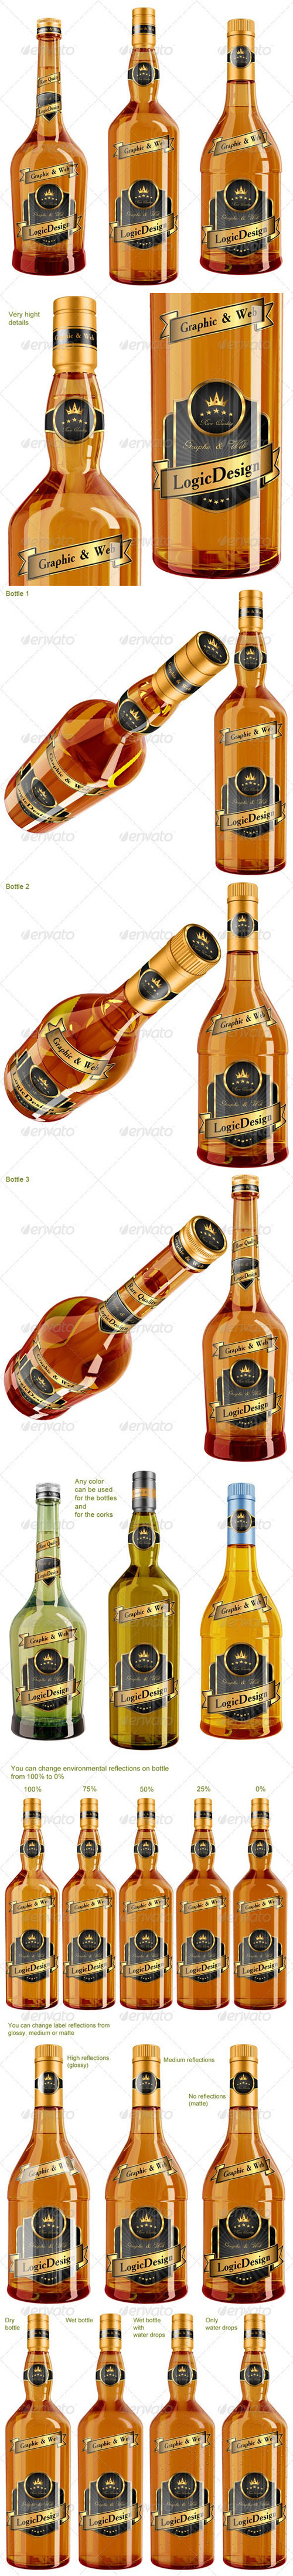 GraphicRiver - Whisky & Cognac Bottle Mock Up 2558881 b